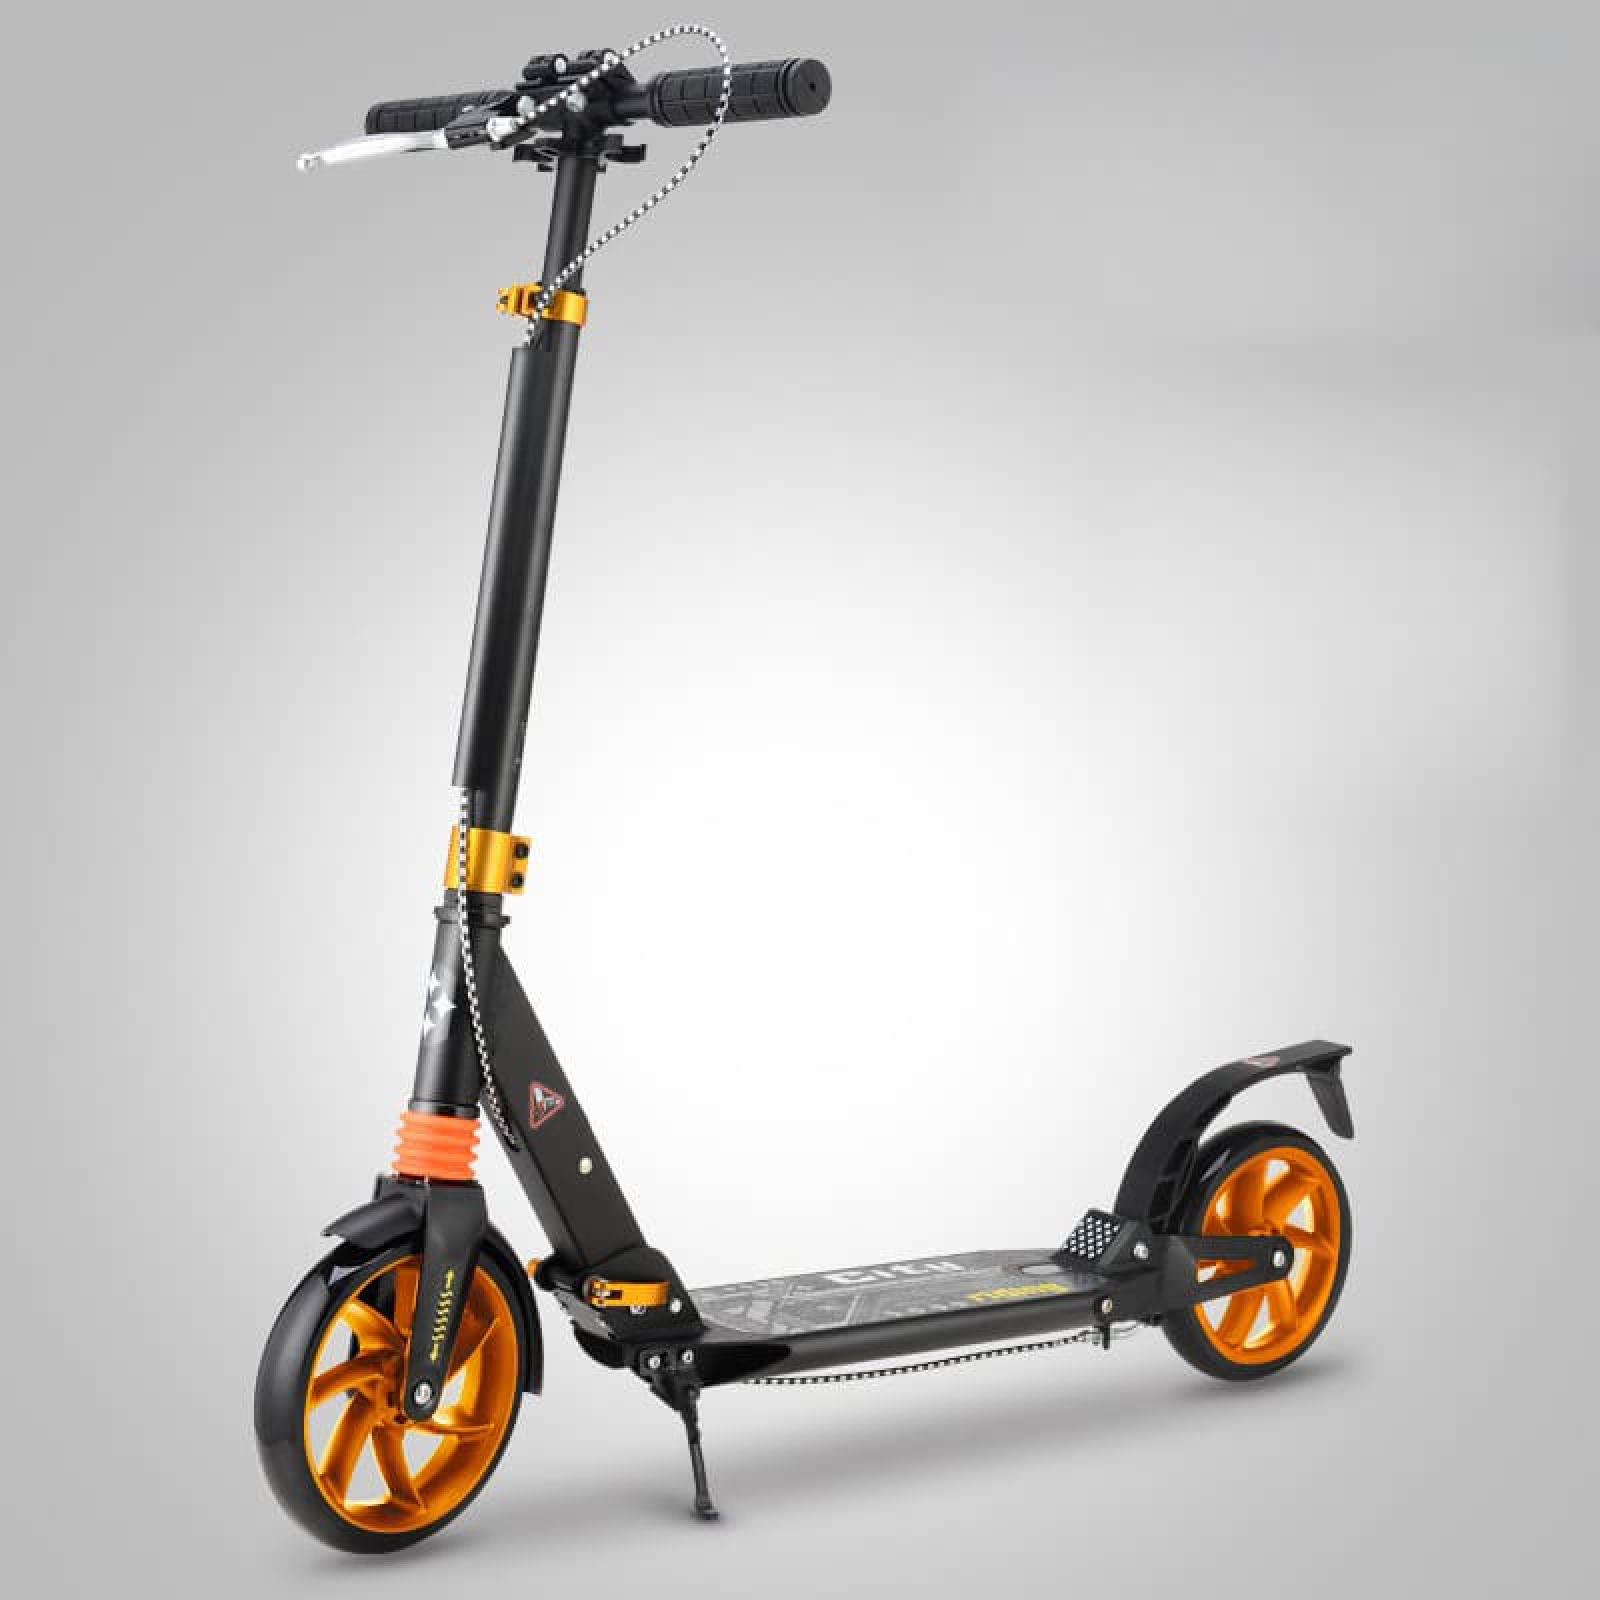 Xe trượt scooter điện cho trẻ em: Cho phép trẻ em khám phá thế giới với chiếc xe trượt scooter điện hấp dẫn này. Với thiết kế an toàn và chất lượng cao, đây là một sự lựa chọn tuyệt vời để tăng cường sự phát triển của trẻ nhỏ và khuyến khích hoạt động ngoài trời.